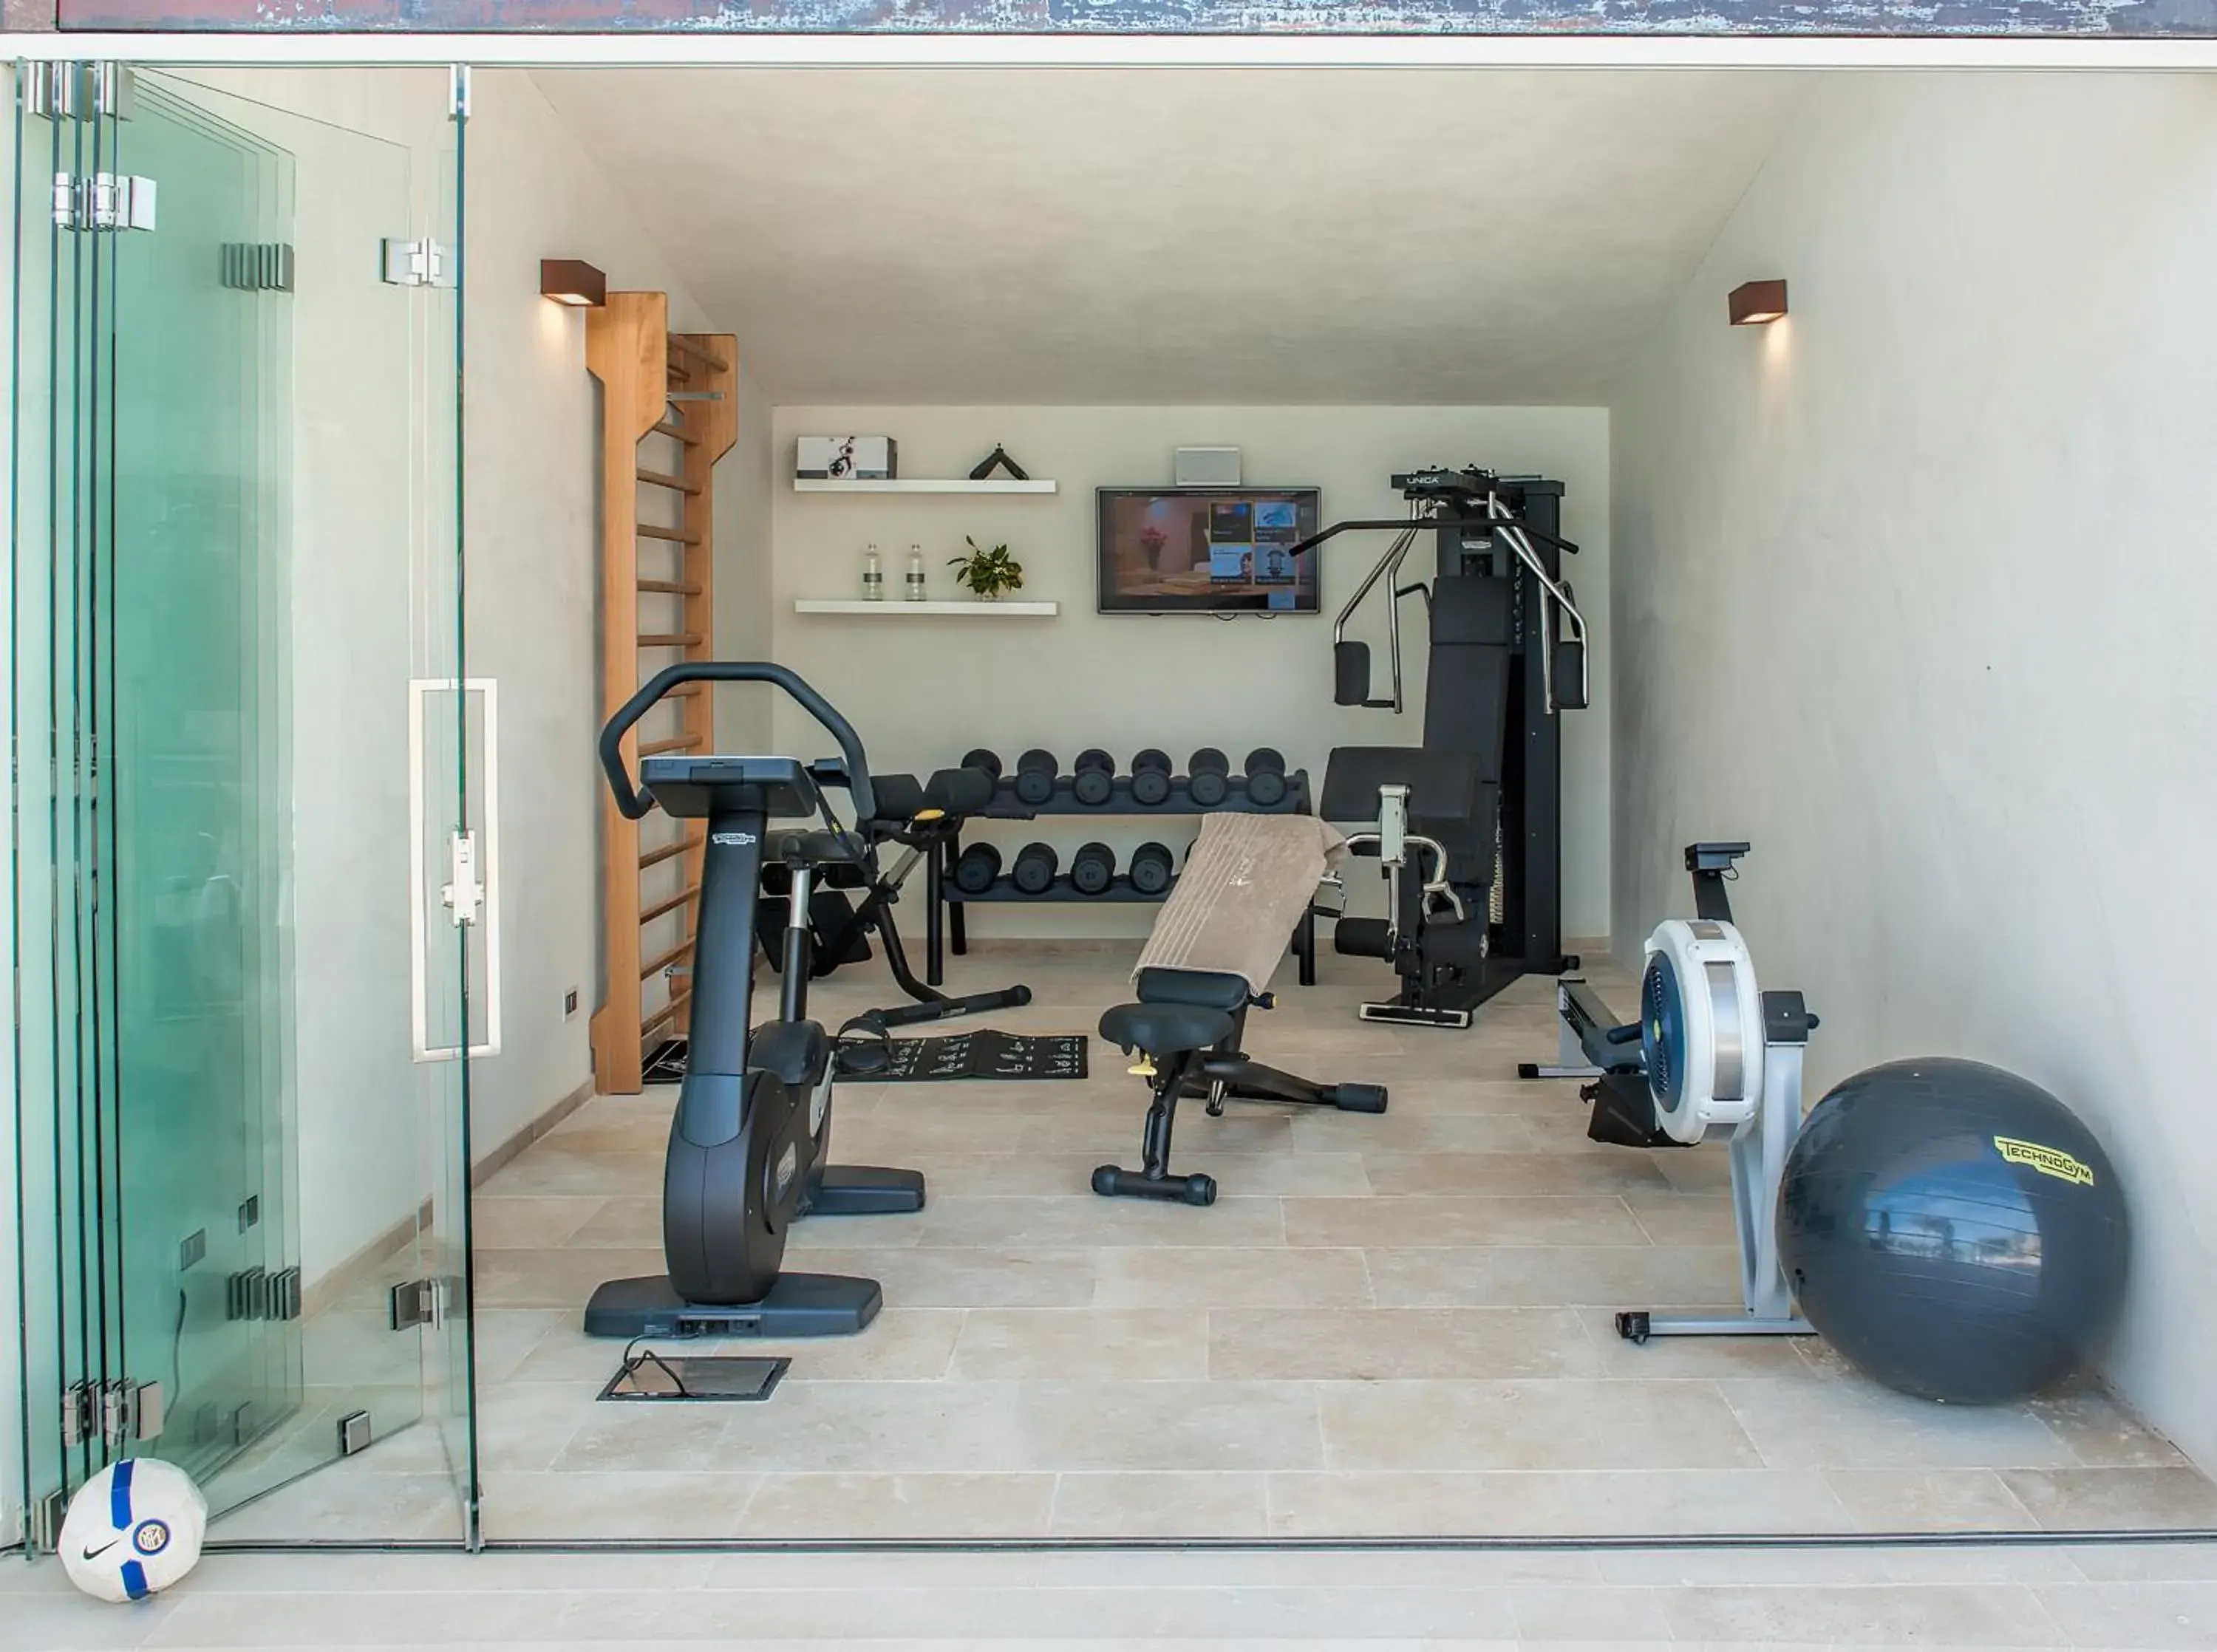 Fitness centre/facilities, Fitness Center/Facilities in Masseria Della Volpe